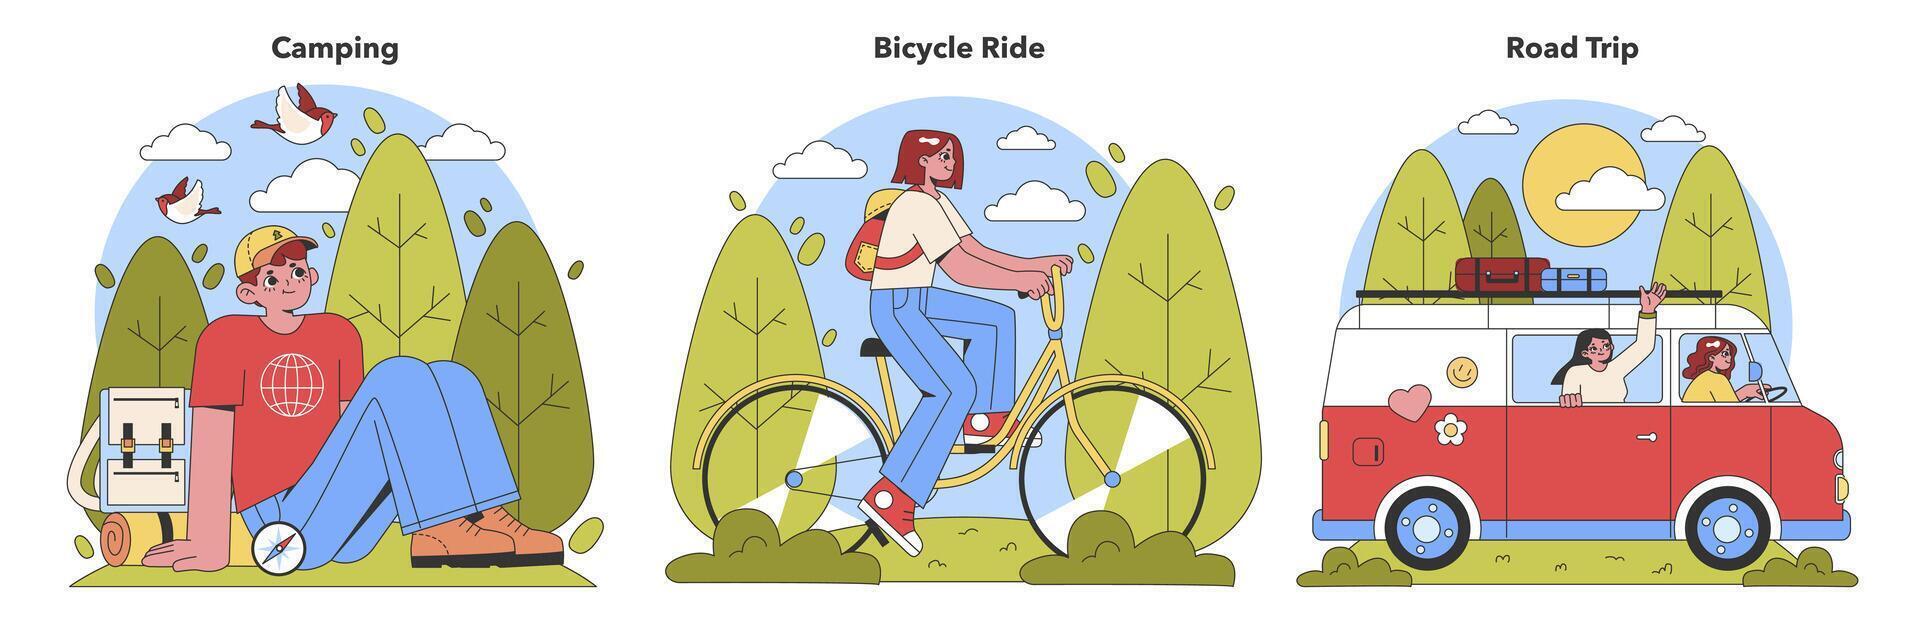 vibrante vetor ilustrações retratar a excitação do ao ar livre Atividades. uma campista relaxante, uma ciclista em uma jornada, e amigos em uma alegre estrada viagem.